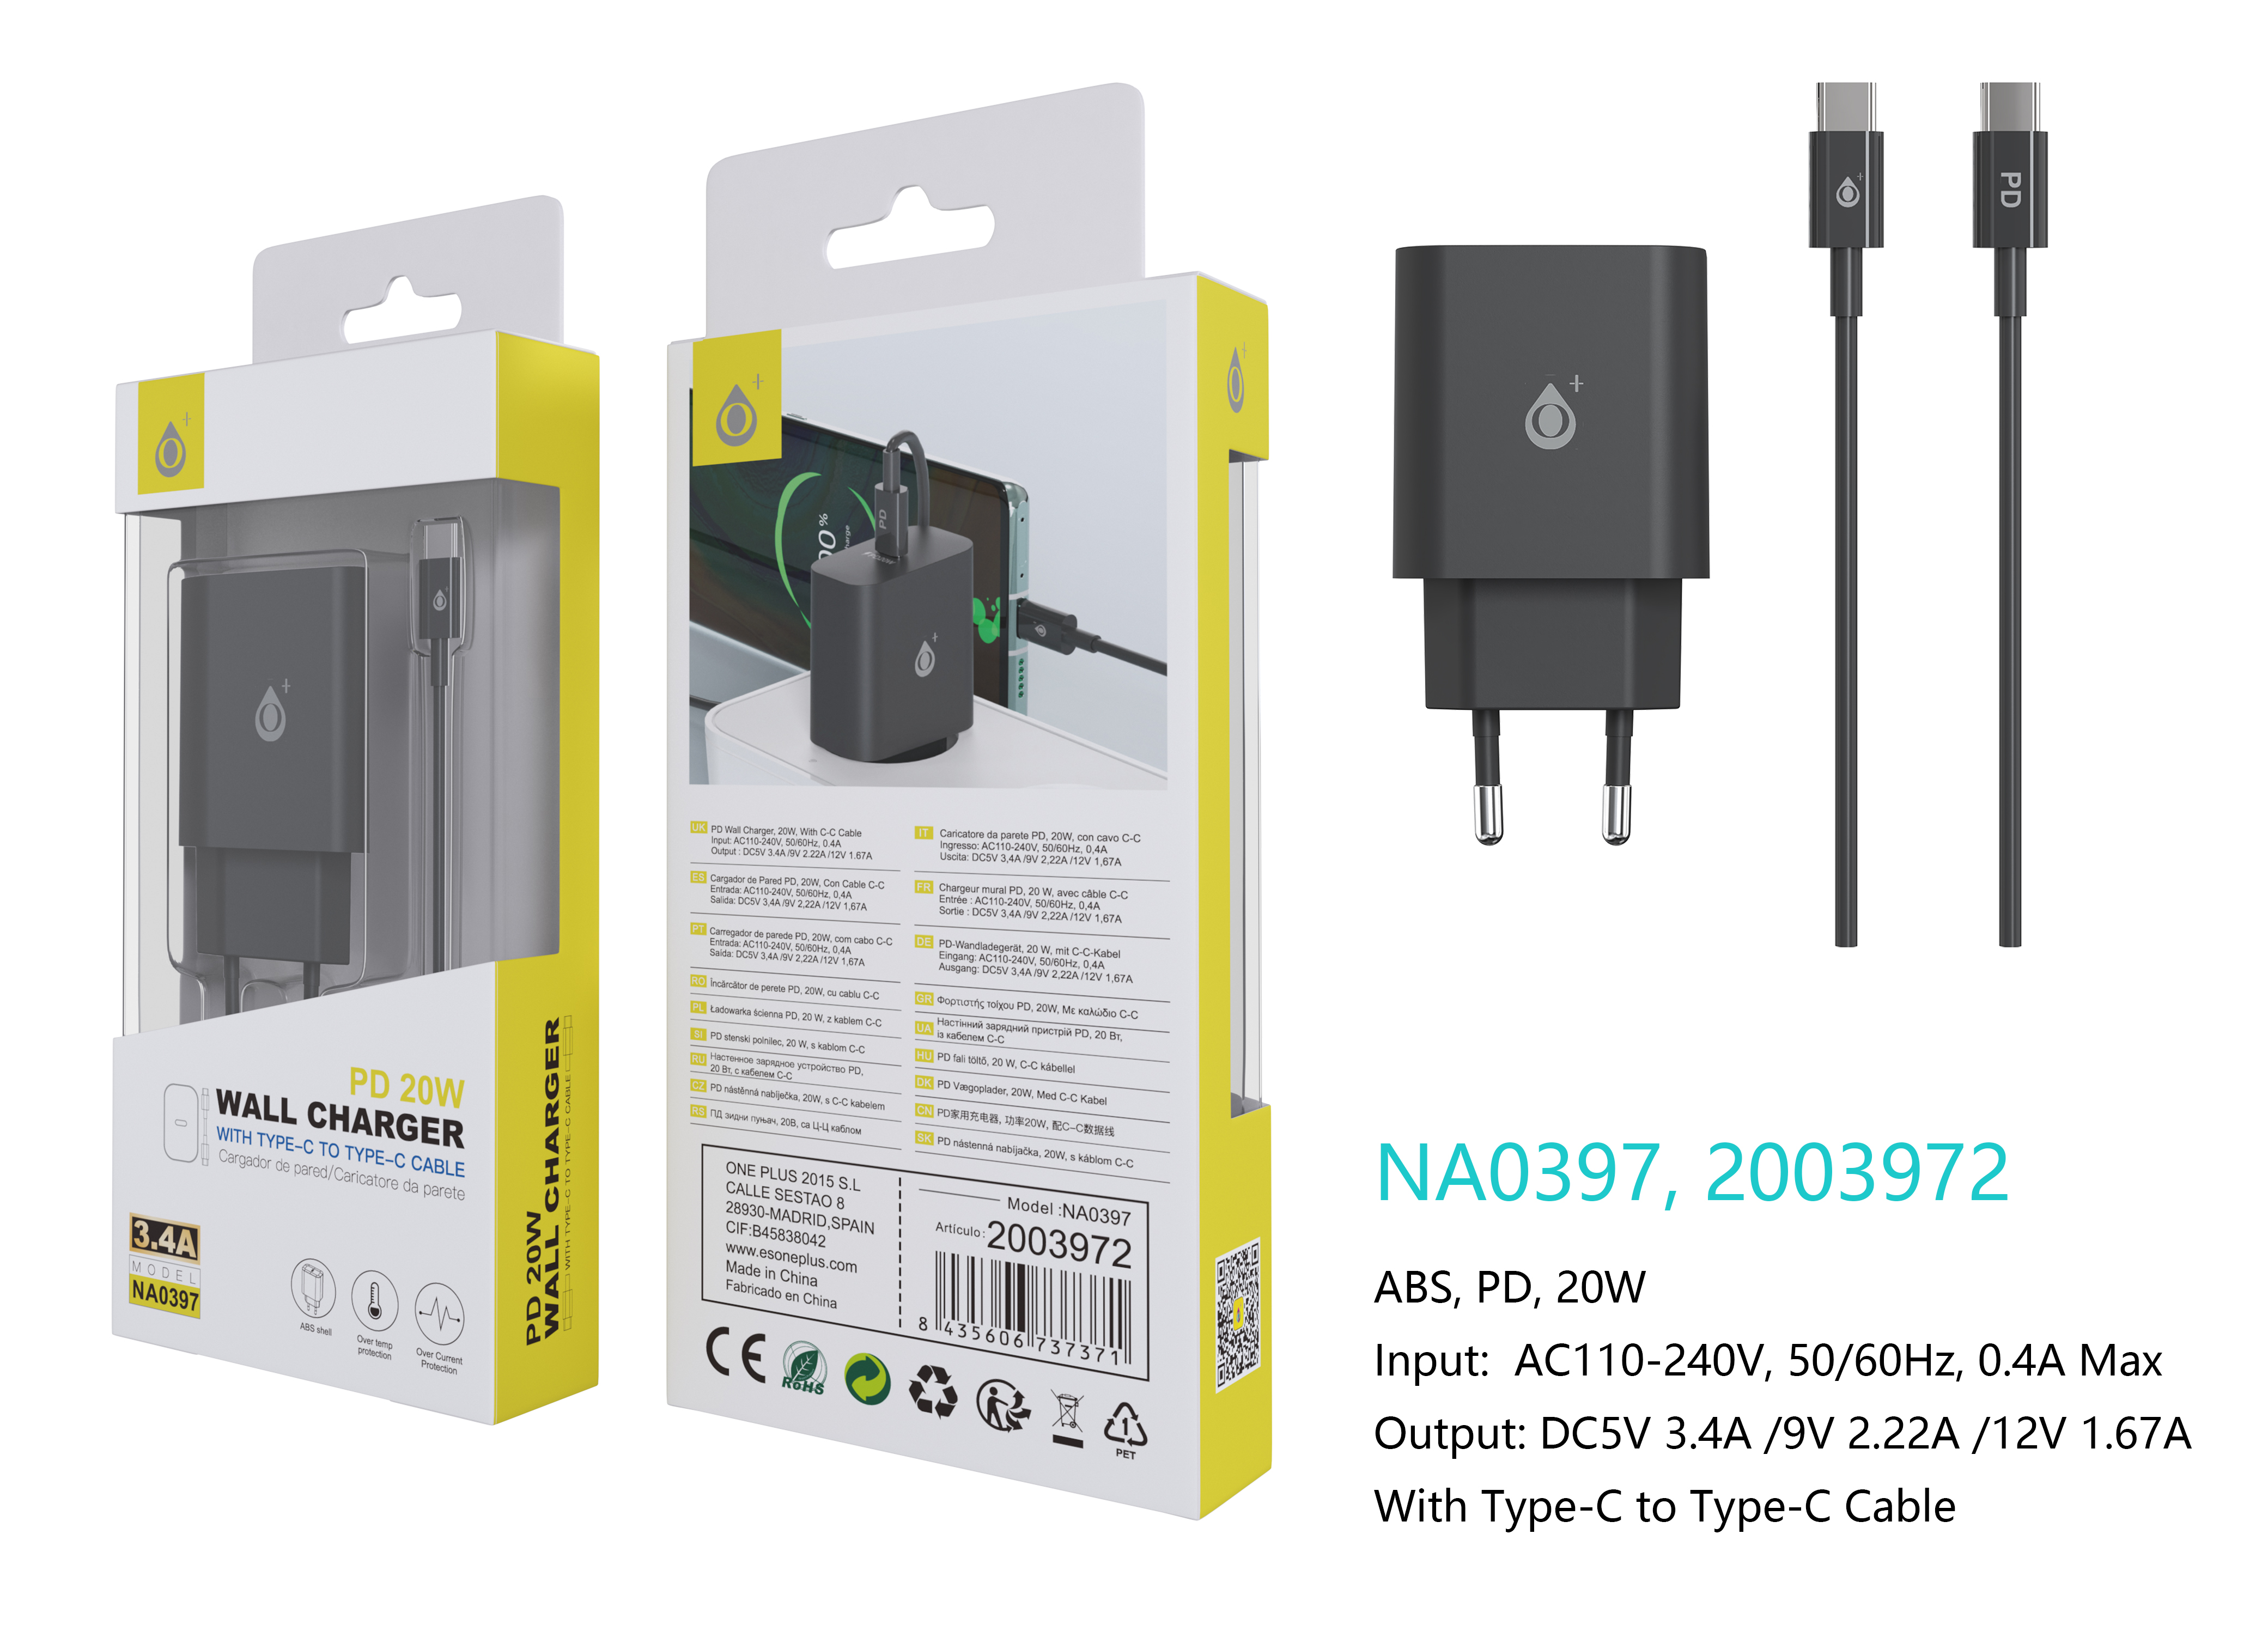 NA0397 NE Cargador de Red Rapida Berta , 1 puerto USB-CC PD, con Cable Type-C a Type-C, 20W/3.4A(Max